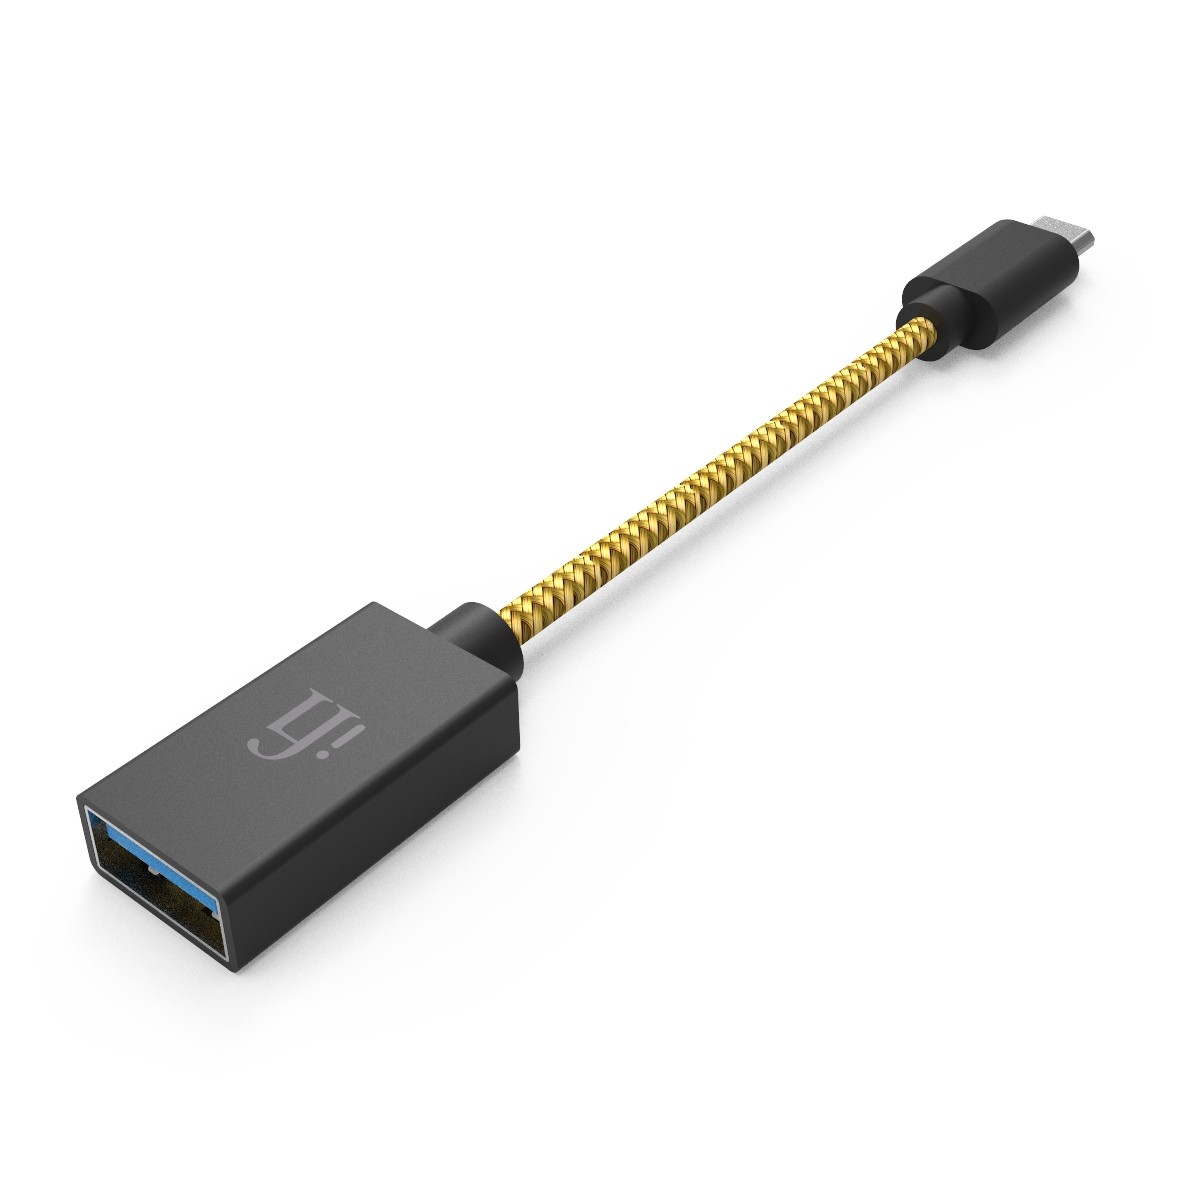 Audiophonics - Adaptateur USB A Femelle vers USB B Male